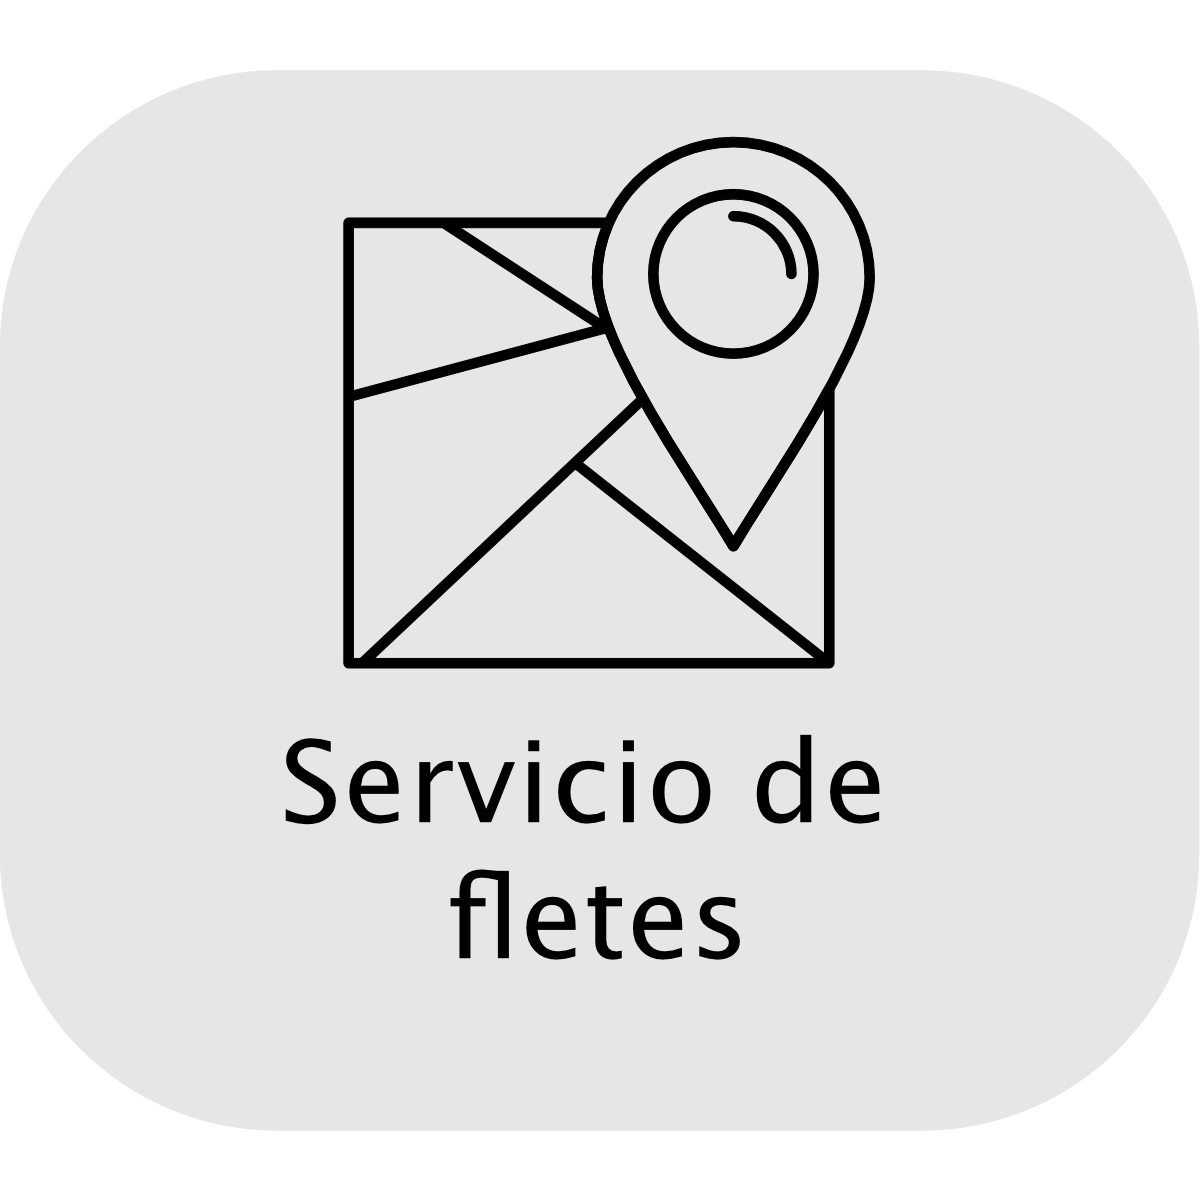 Servicio de fletes icon